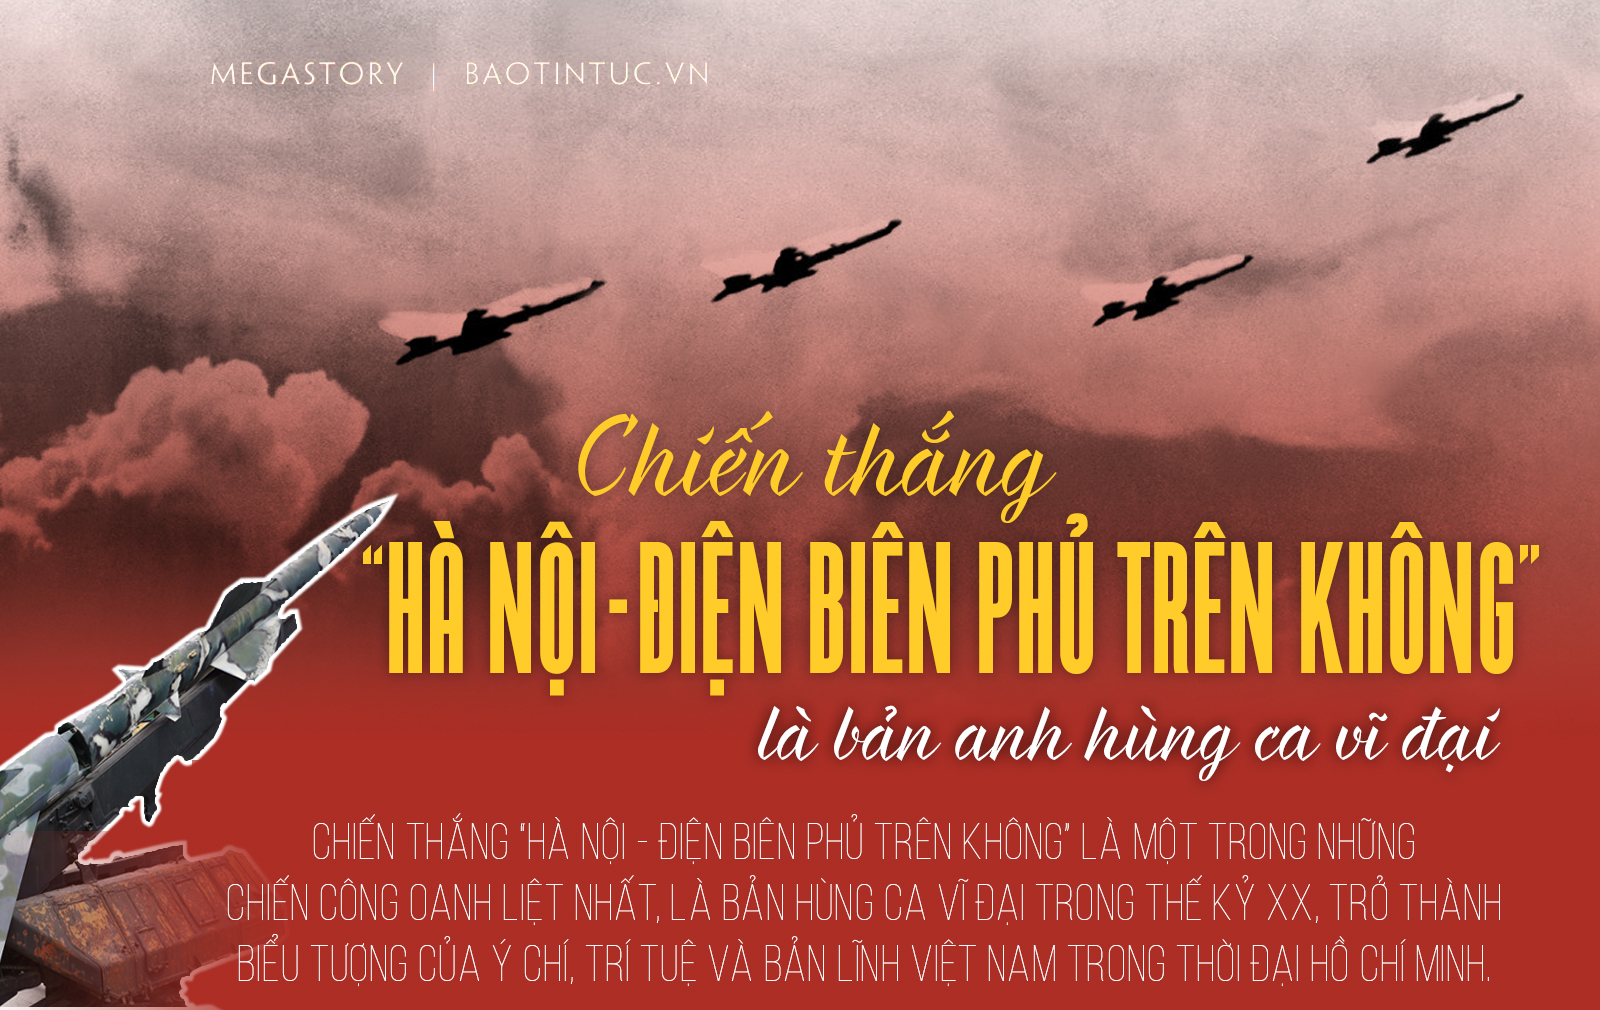 Chiến thắng Hà Nội - Điện Biên Phủ trên không là bản anh hùng ca ...